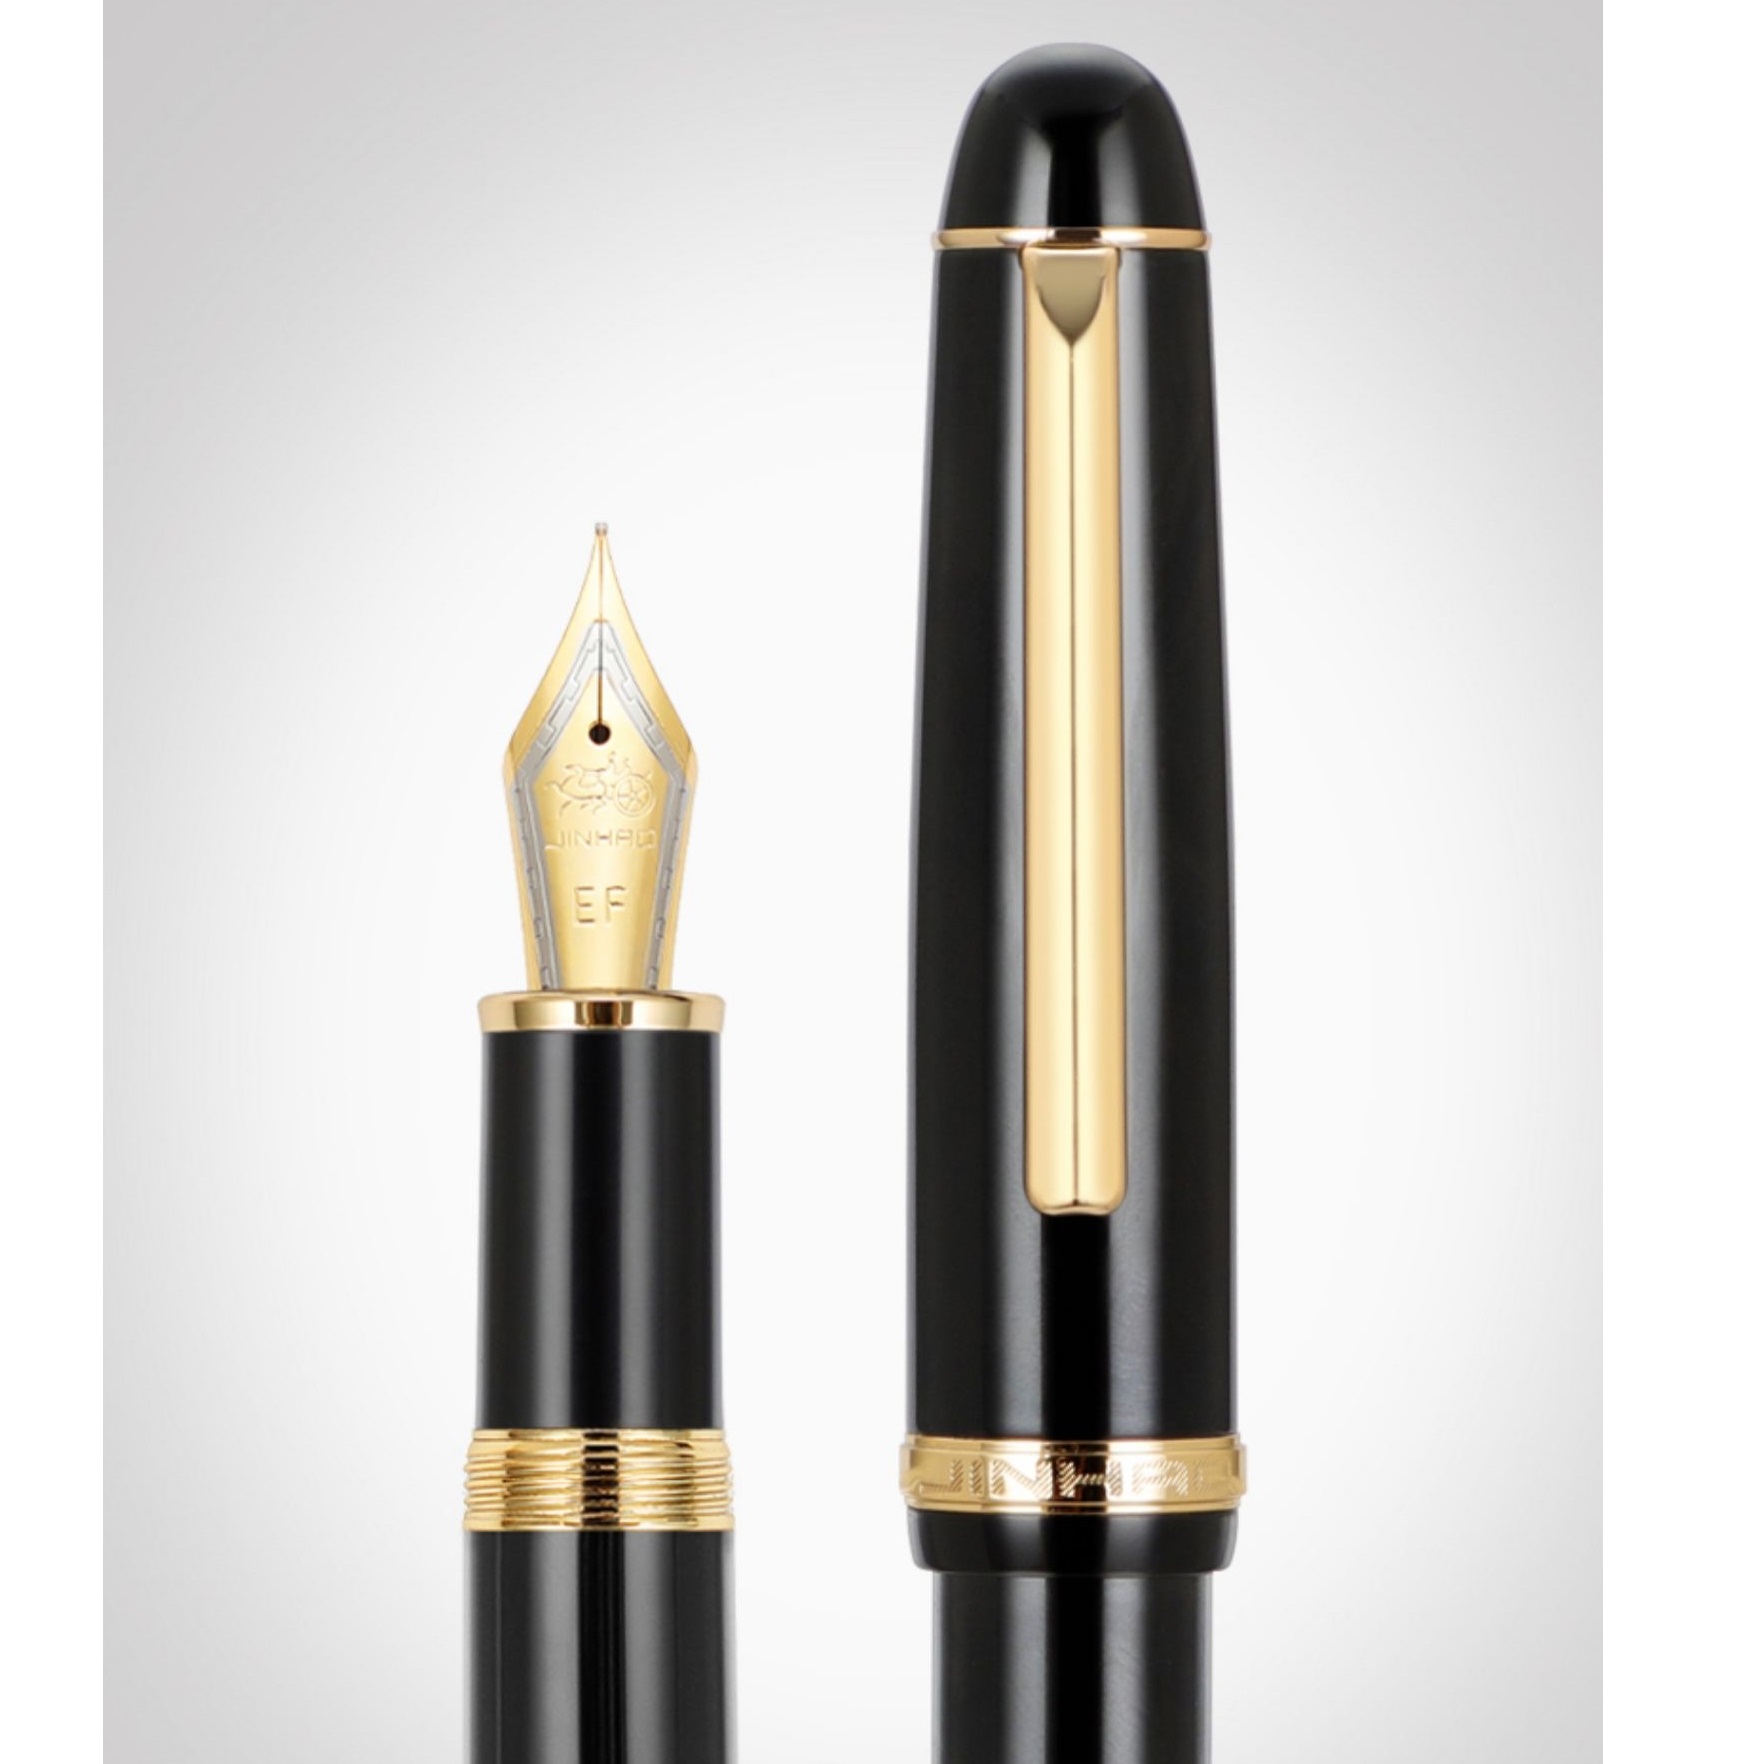 Jinhao x350 Fontanna Pen retro elegancki złoto klip grzywny / średnie stalówka do pisania podpisu biurowego A7345